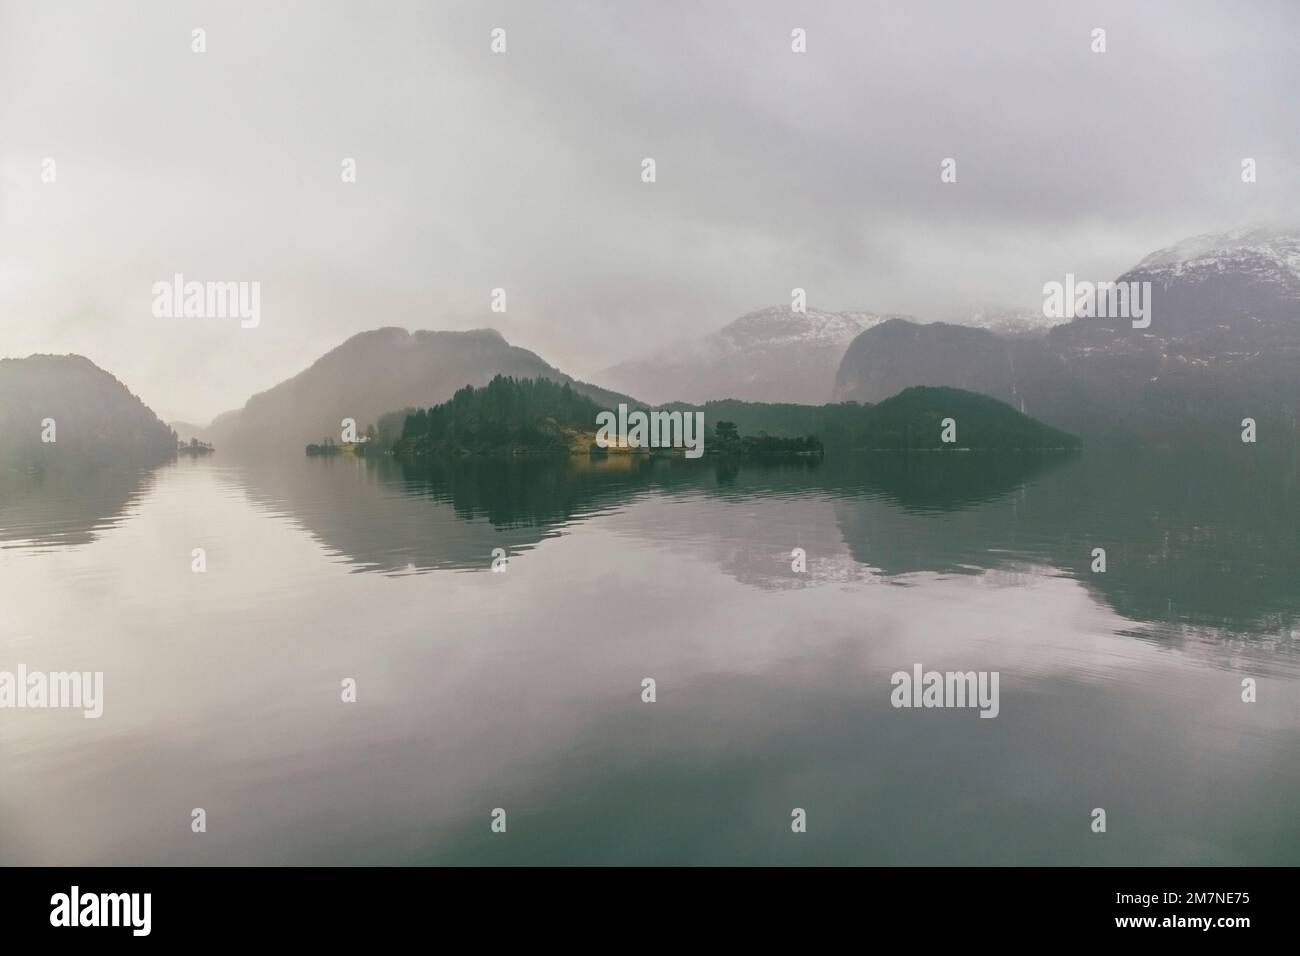 Einsame Häuser auf einer Insel in Norwegen, Landschaft mit Reflexion im Wasser, Nebel und Wolken, typische Fjordlandschaft mit kleinen Inseln, Abgeschiedenheit von der Außenwelt, zentrale Perspektive Stockfoto